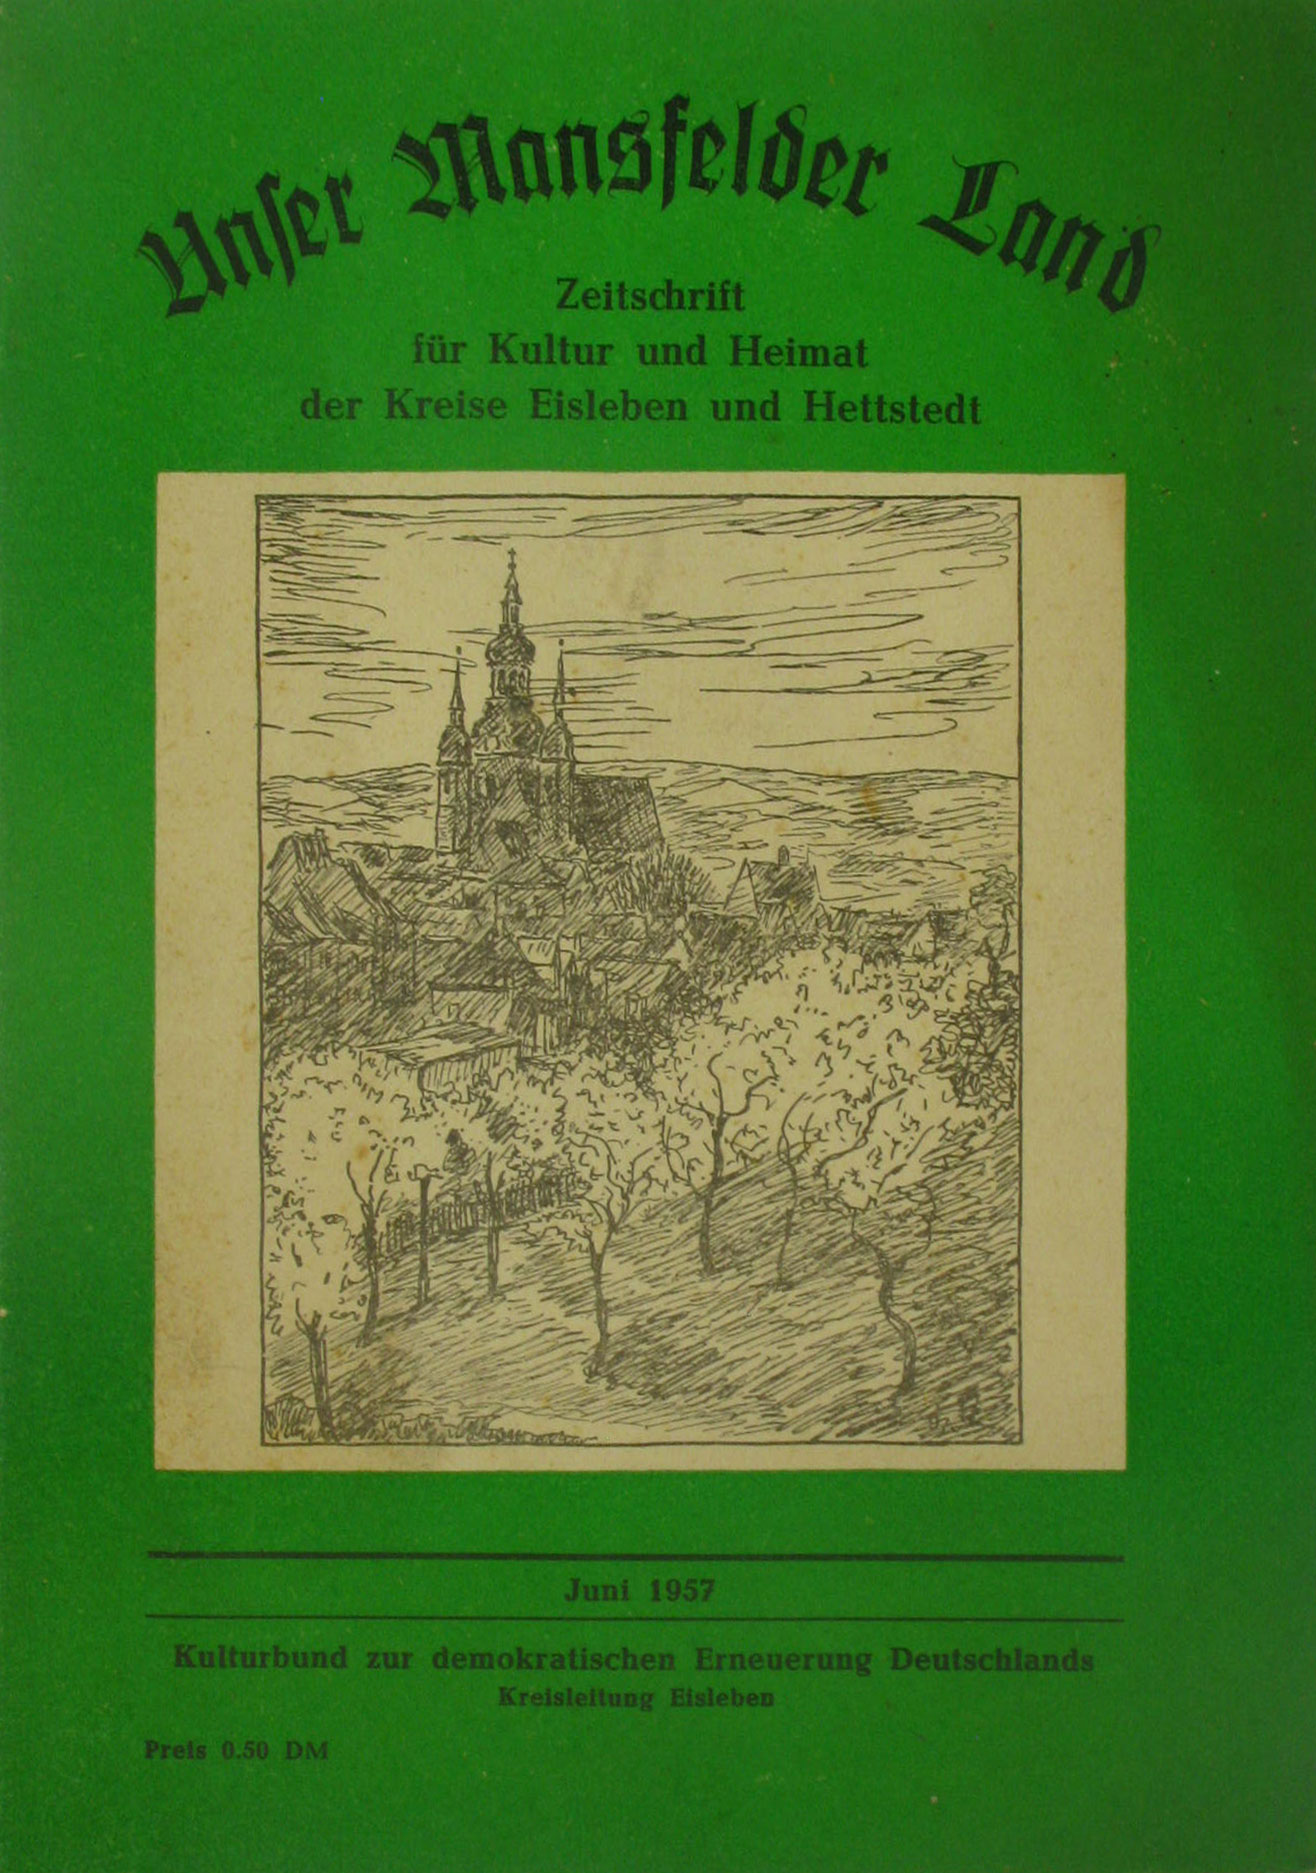 Autorenkollektiv:  Unser Mansfelder Land. Zeitschrift für Kultur und Heimat der Kreise Eisleben und Hettstedt (Juni 1957) 